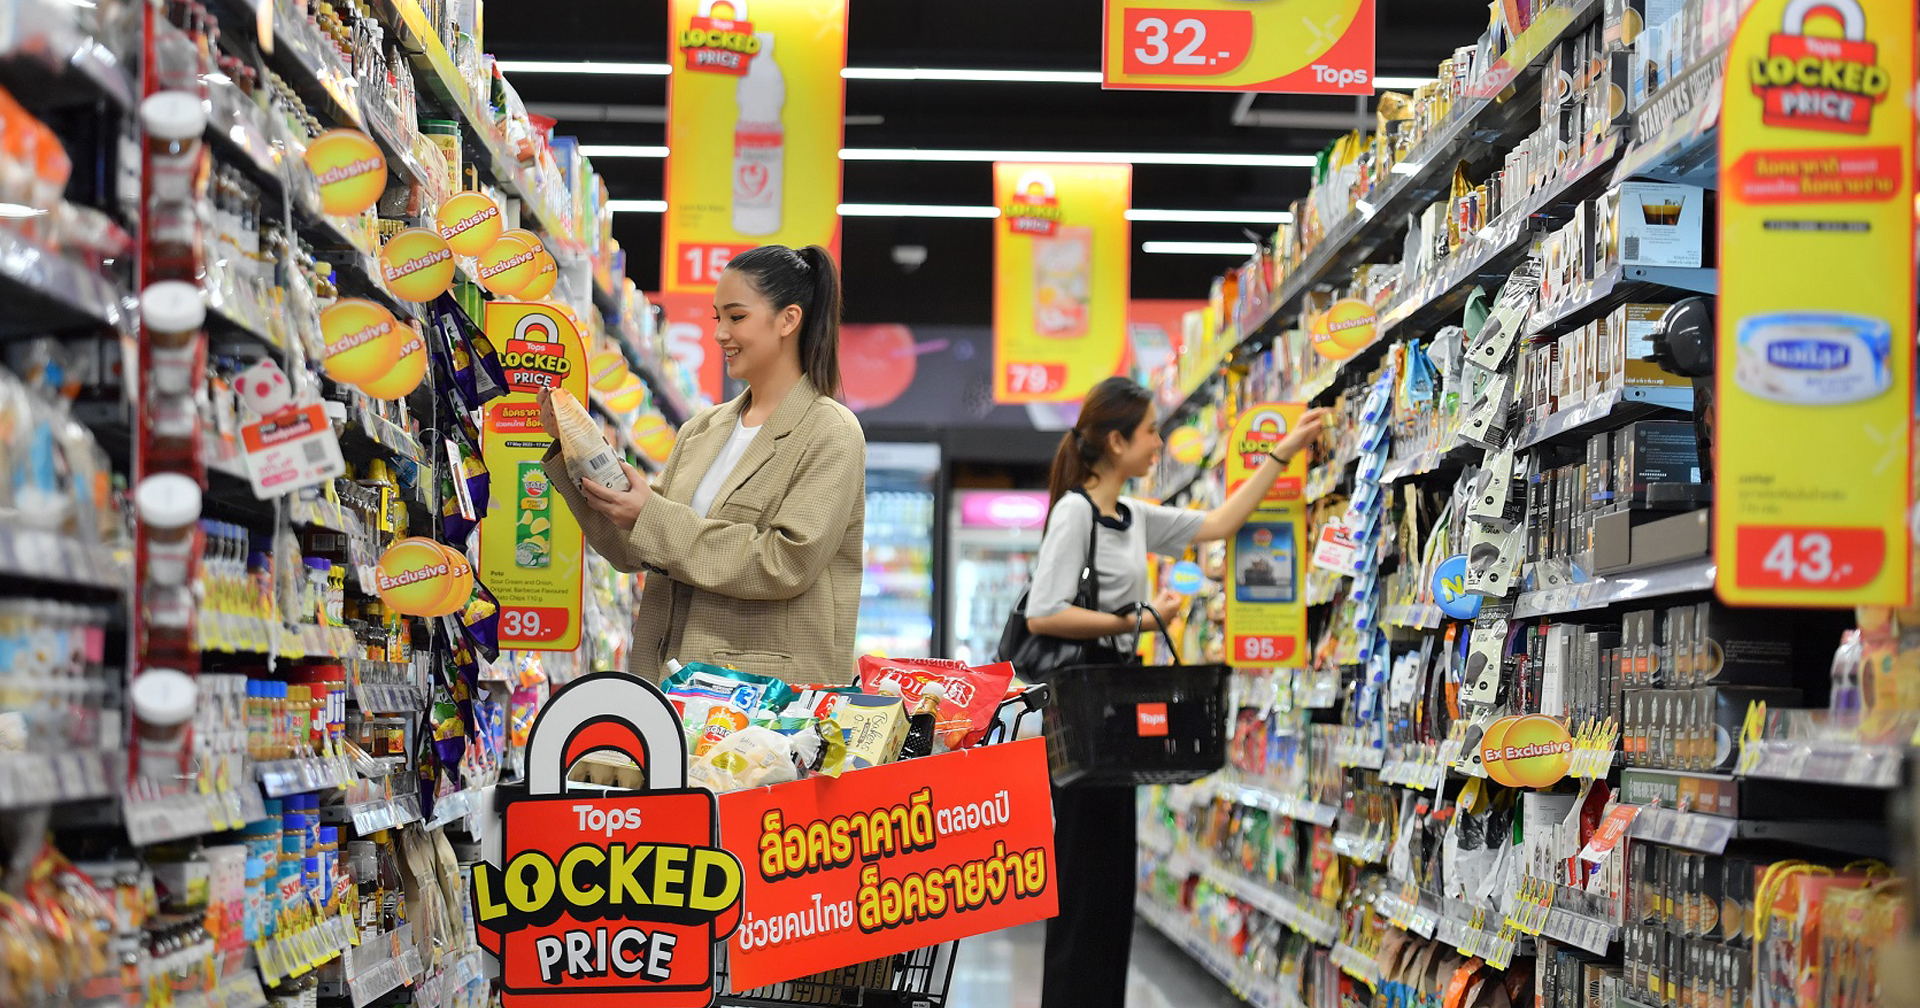 Tops ประกาศตรึงราคาสินค้าอุปโภค – บริโภค ที่จำเป็นต่อชีวิตประจำวัน ช่วยเหลือคนไทยในยุคที่ค่าครองชีพสูงขึ้น